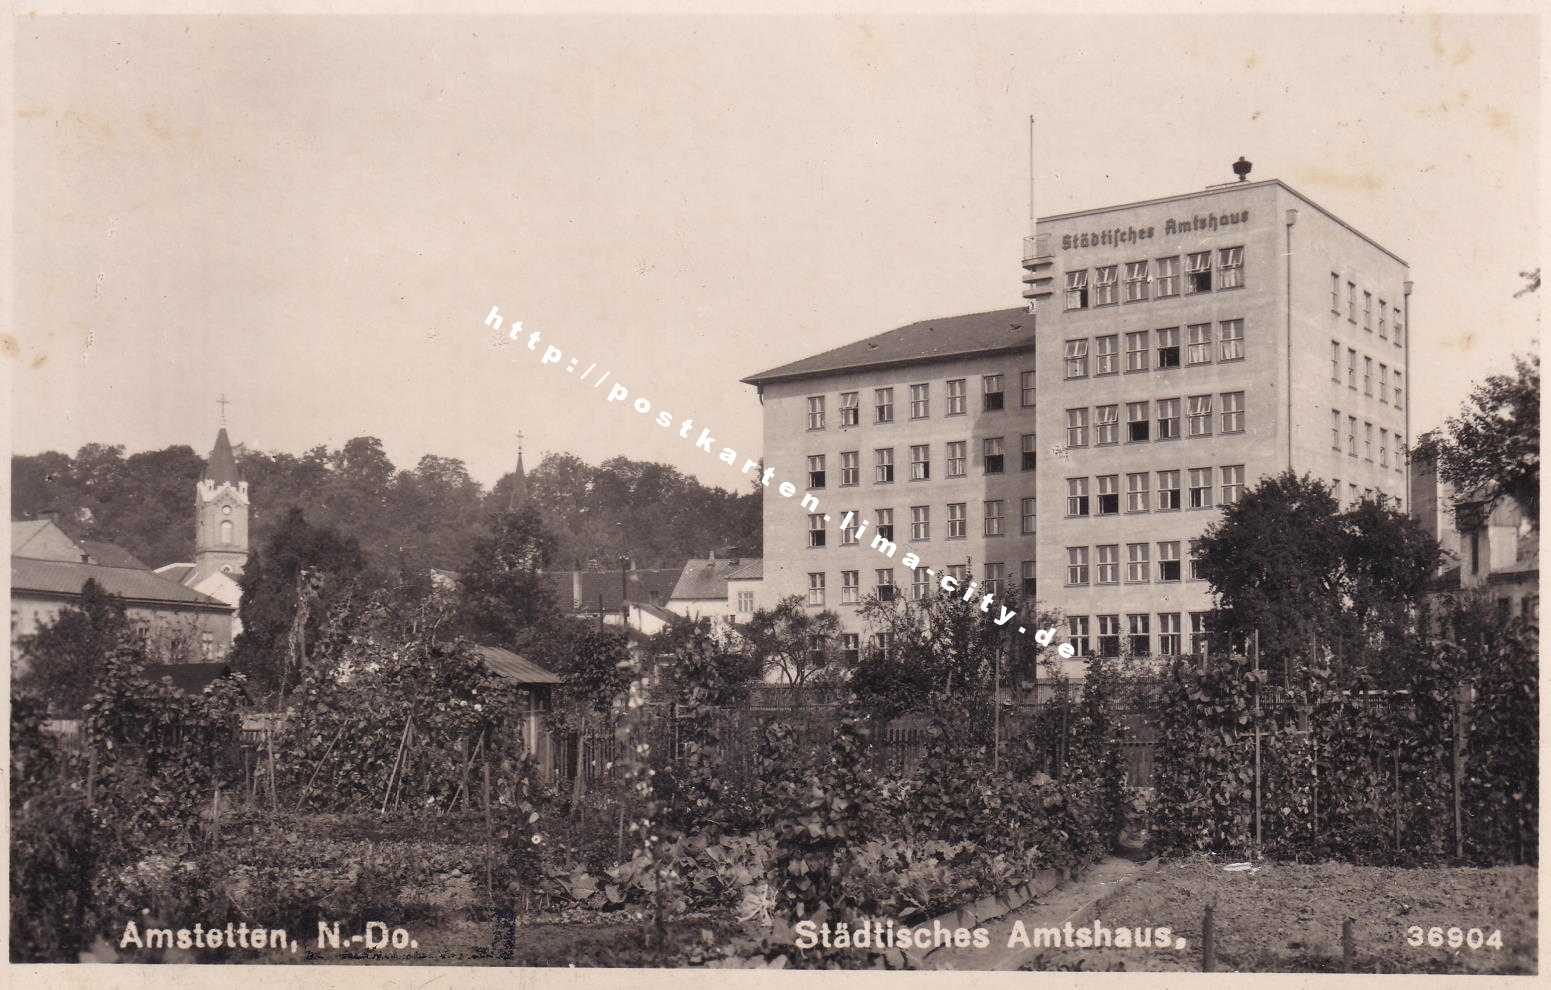 Amstetten ND - Städtisches Amstshaus 1941